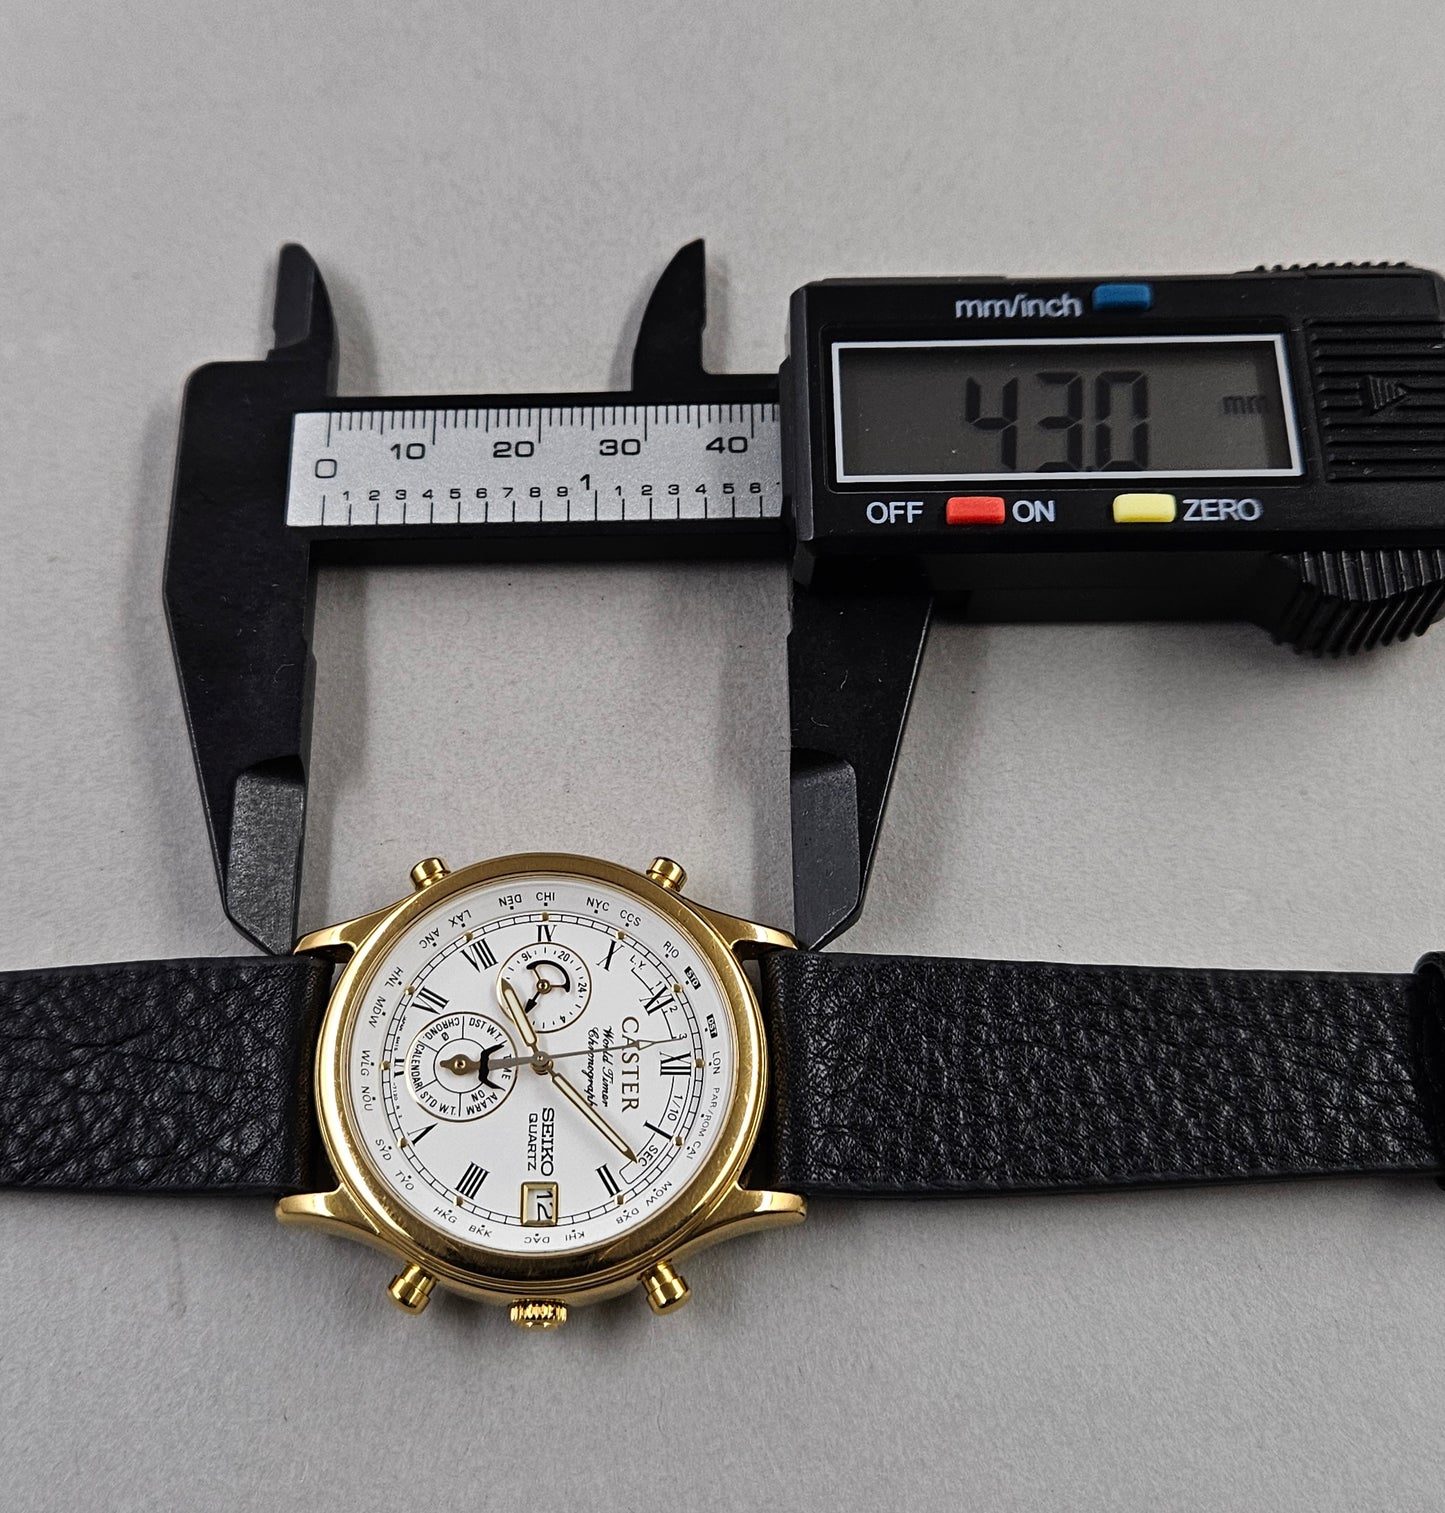 Seiko World Timer Chronograph Caster 6M15-7030